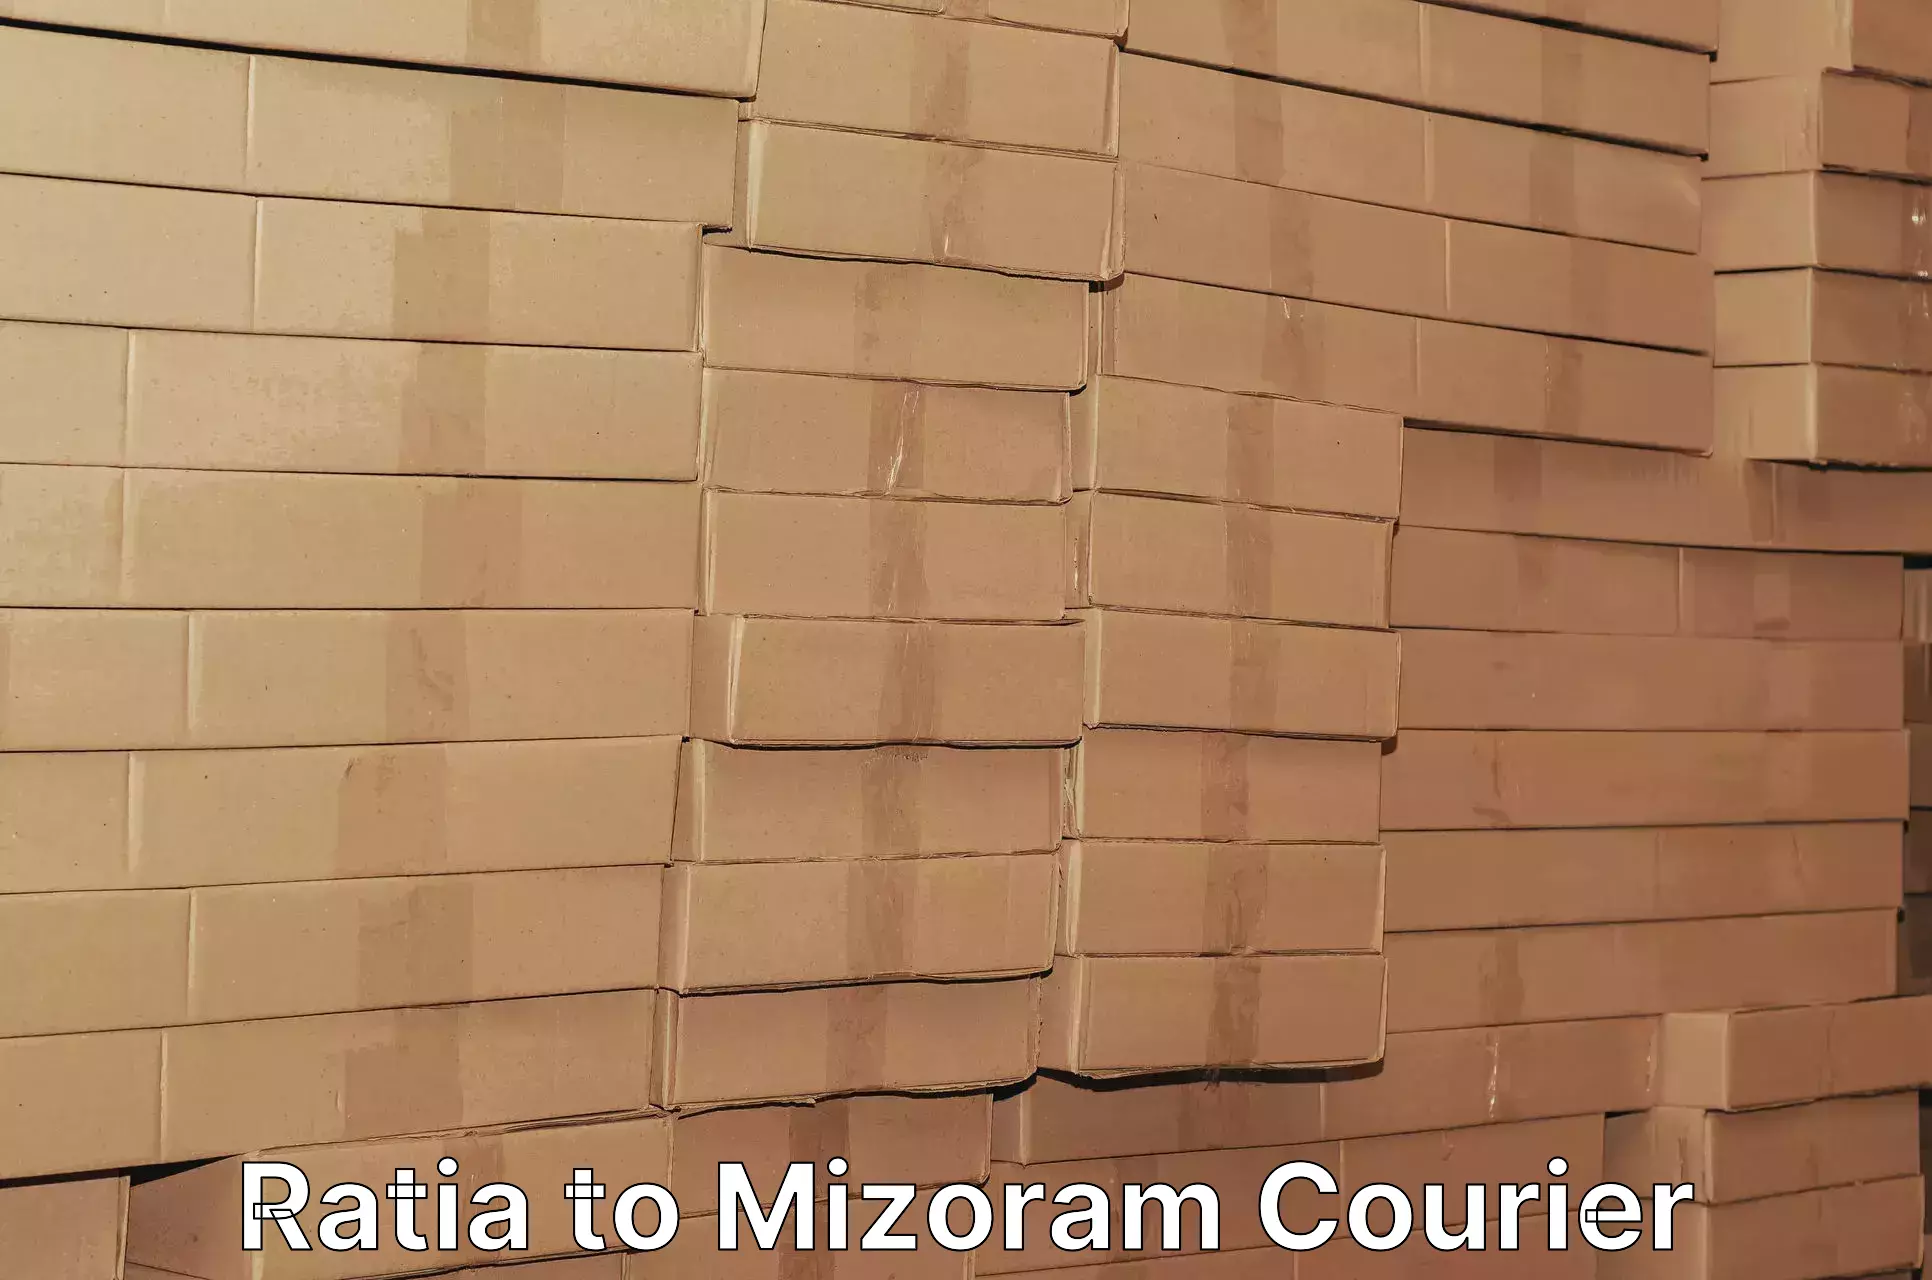 Efficient logistics management Ratia to Mizoram